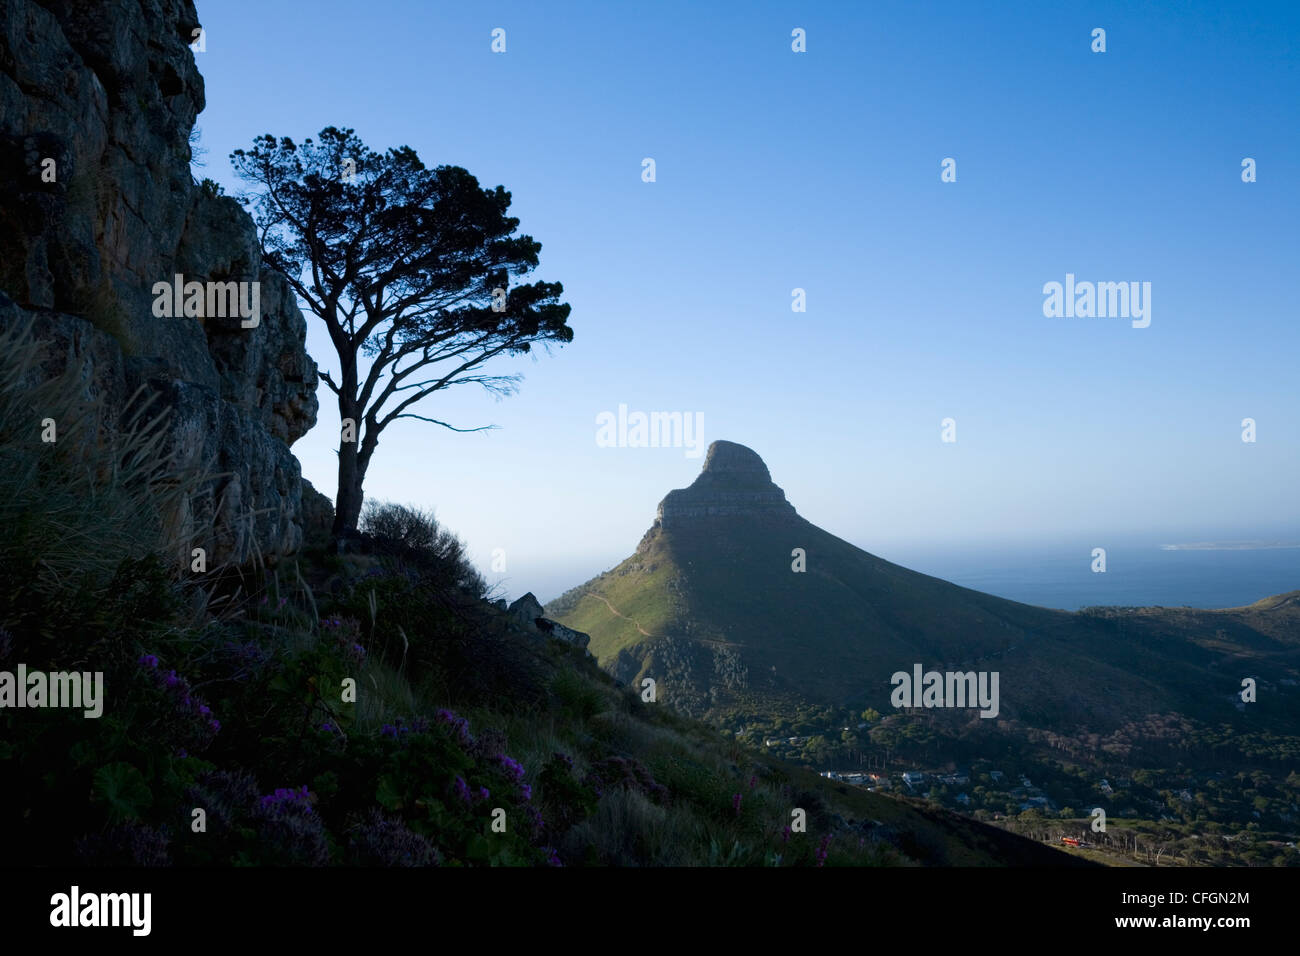 La tête de lion sur le côté de la Montagne de la table. La ville du Cap. L'Afrique du Sud. Banque D'Images